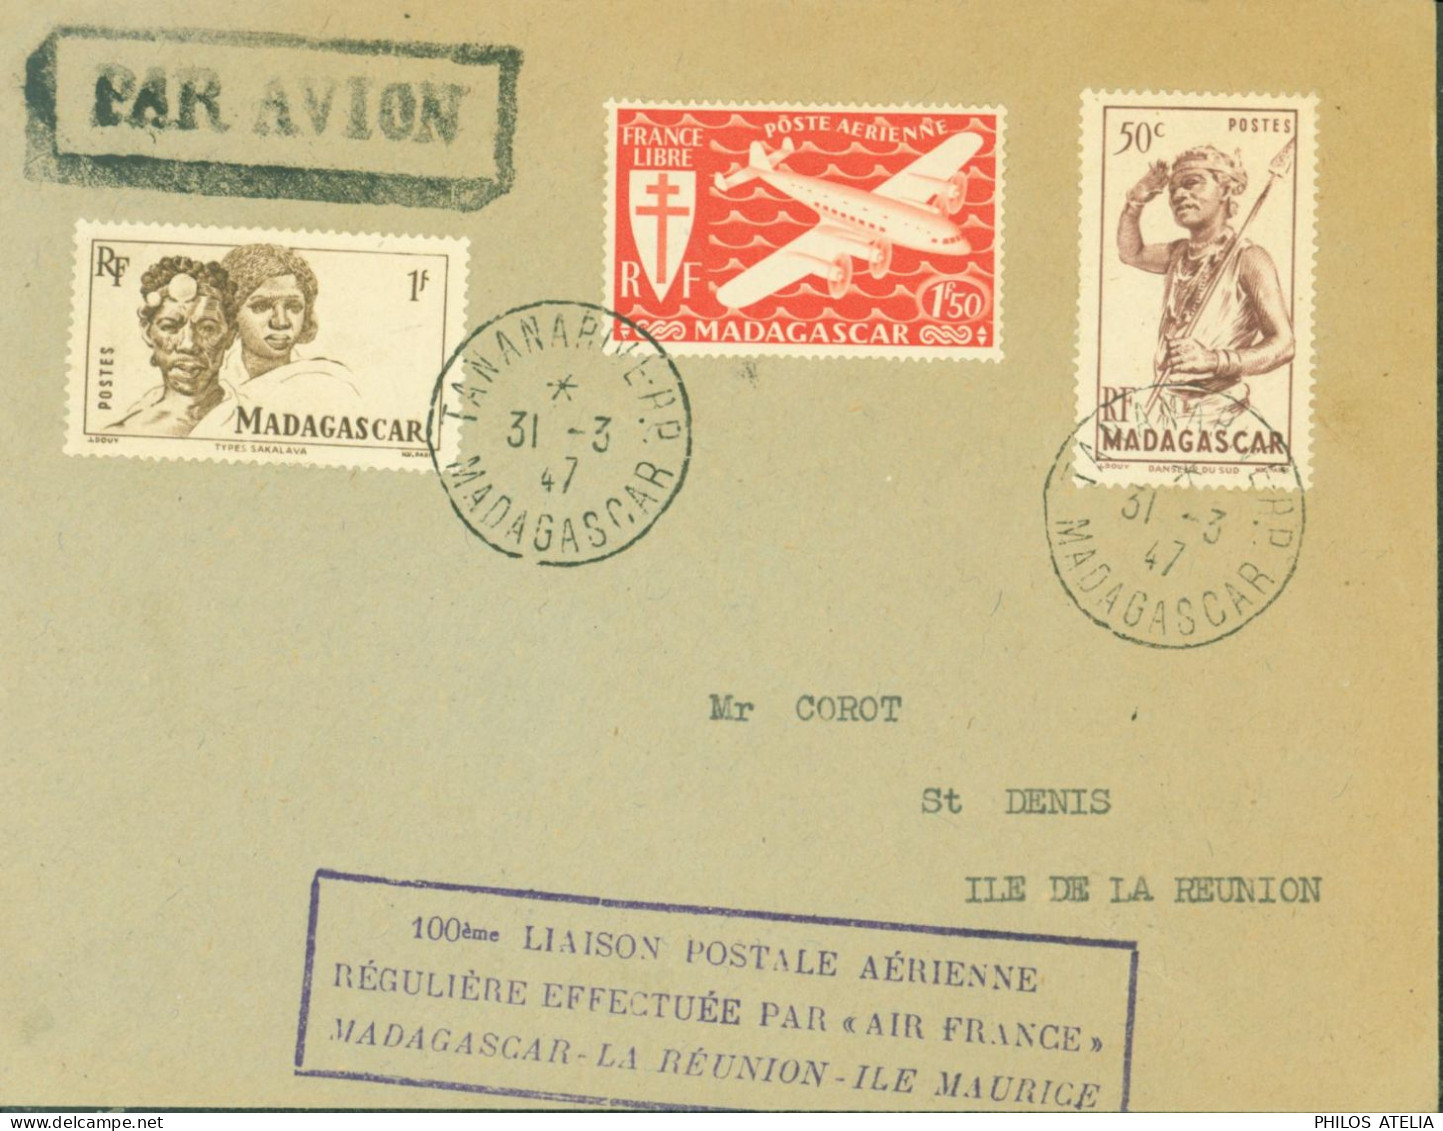 100 Liaison Postale Aérienne Régulière Effectuée Par Air France Madagascar La Réunion Ile Maurice CAD Tananarive 31 3 47 - Luchtpost